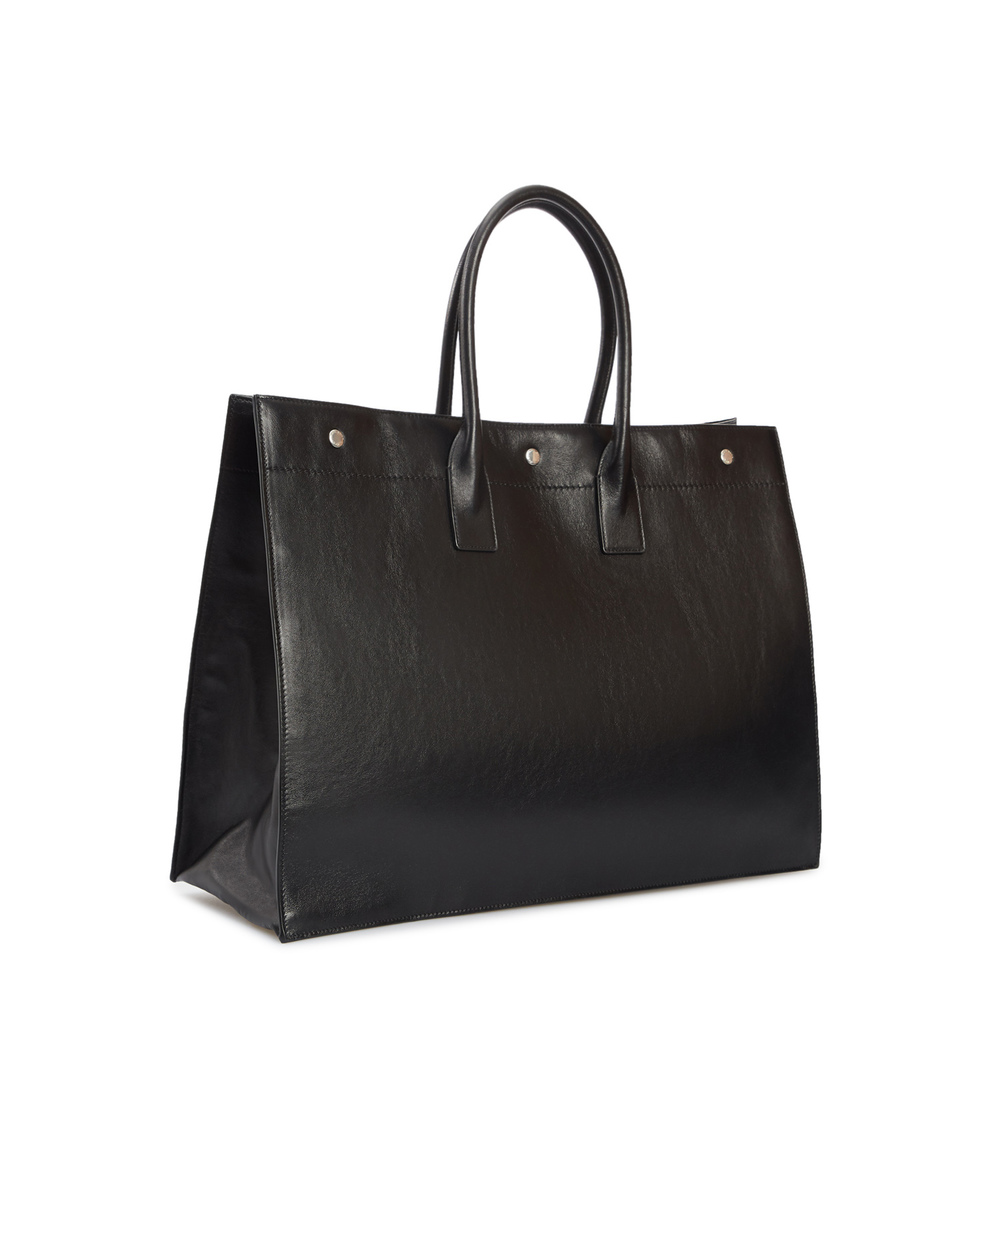 Кожаная сумка Noe large Saint Laurent 587273-CWTFE-, черный цвет • Купить в интернет-магазине Kameron